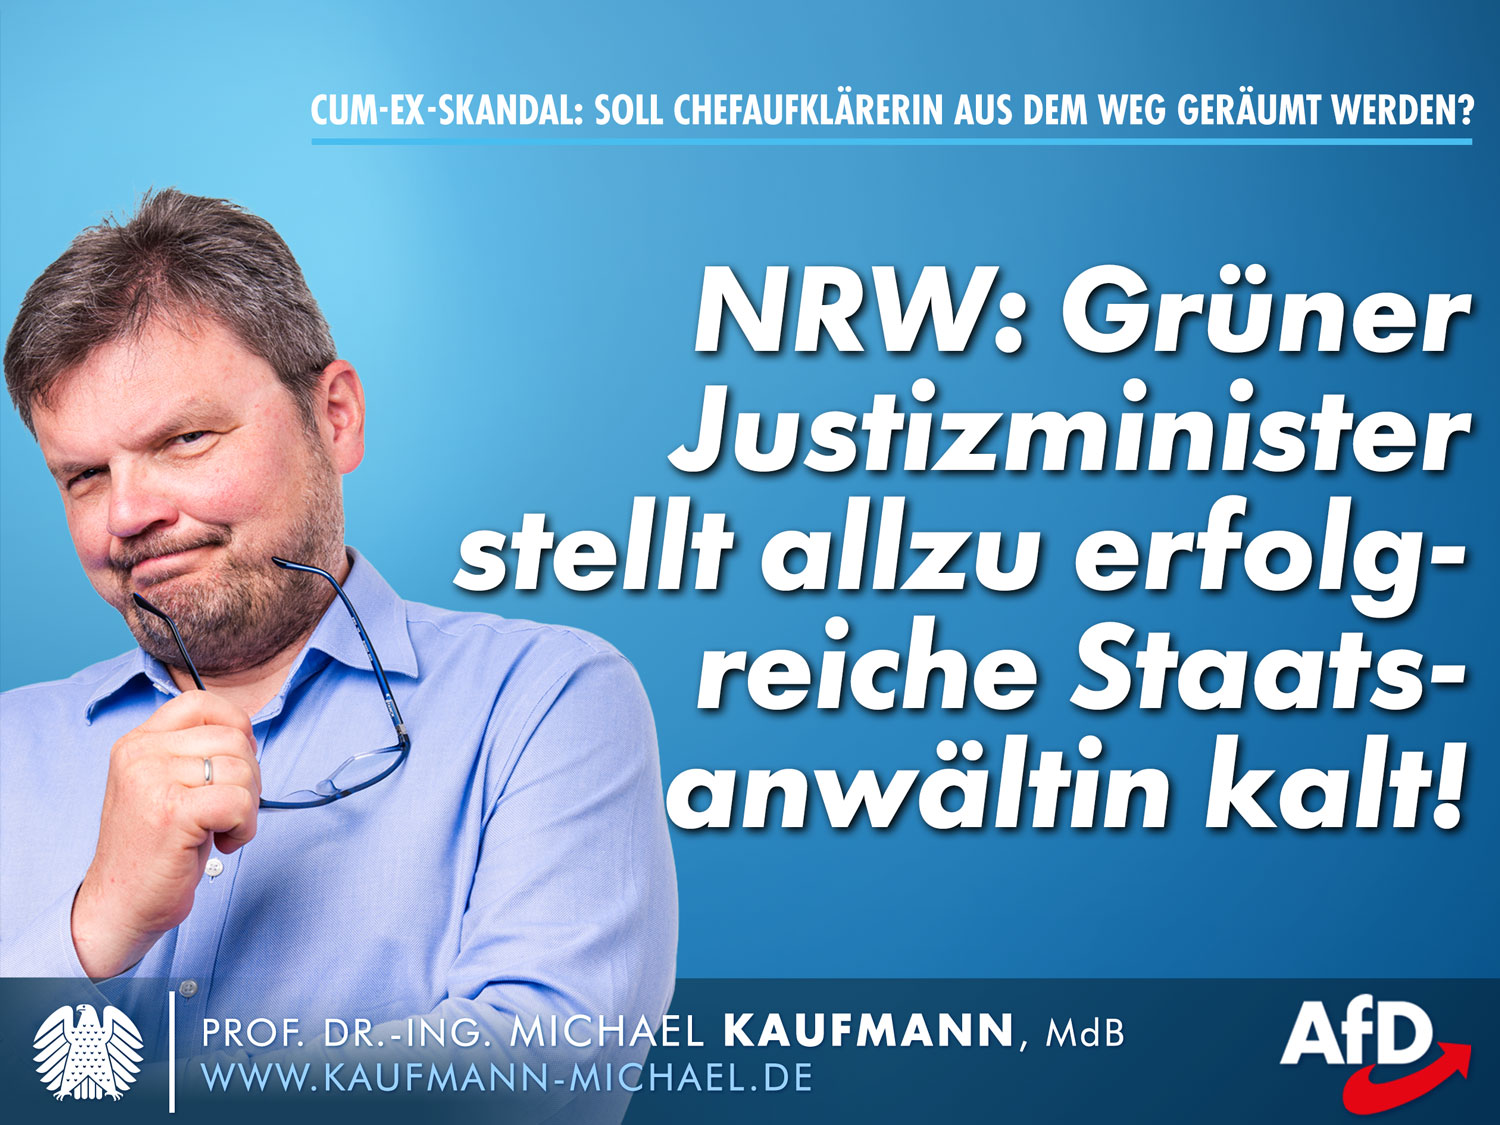 Cum-Ex-Skandal: Grüner Justizminister stellt allzu erfolgreiche Staatsanwältin kalt